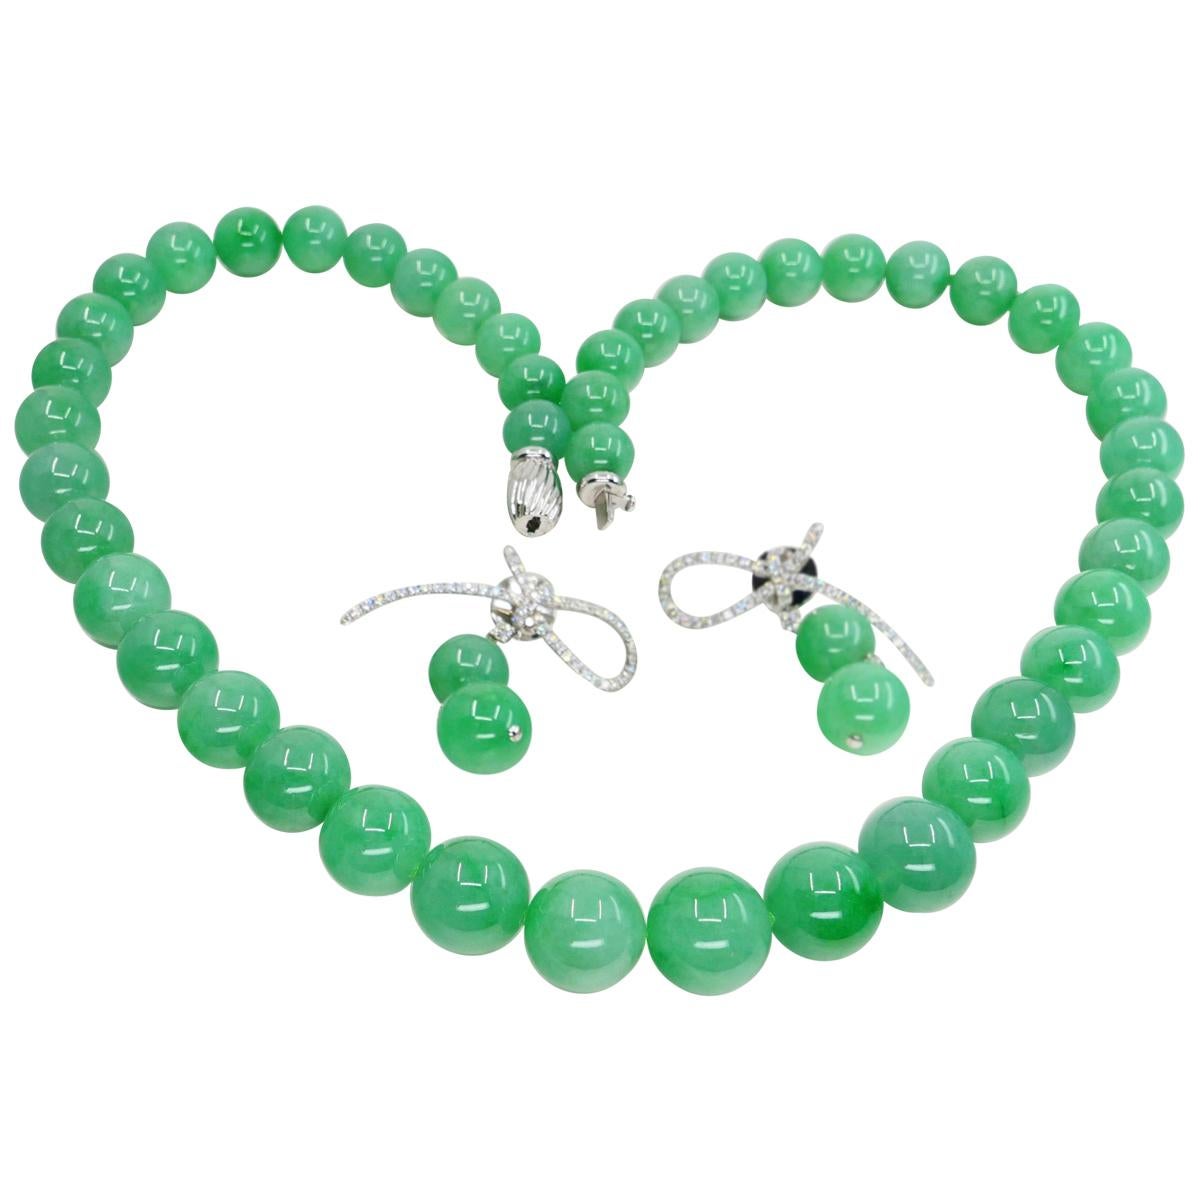 Important Certified Jade Bead (13.9mm) Necklace & Diamond Earrings, Apple Green